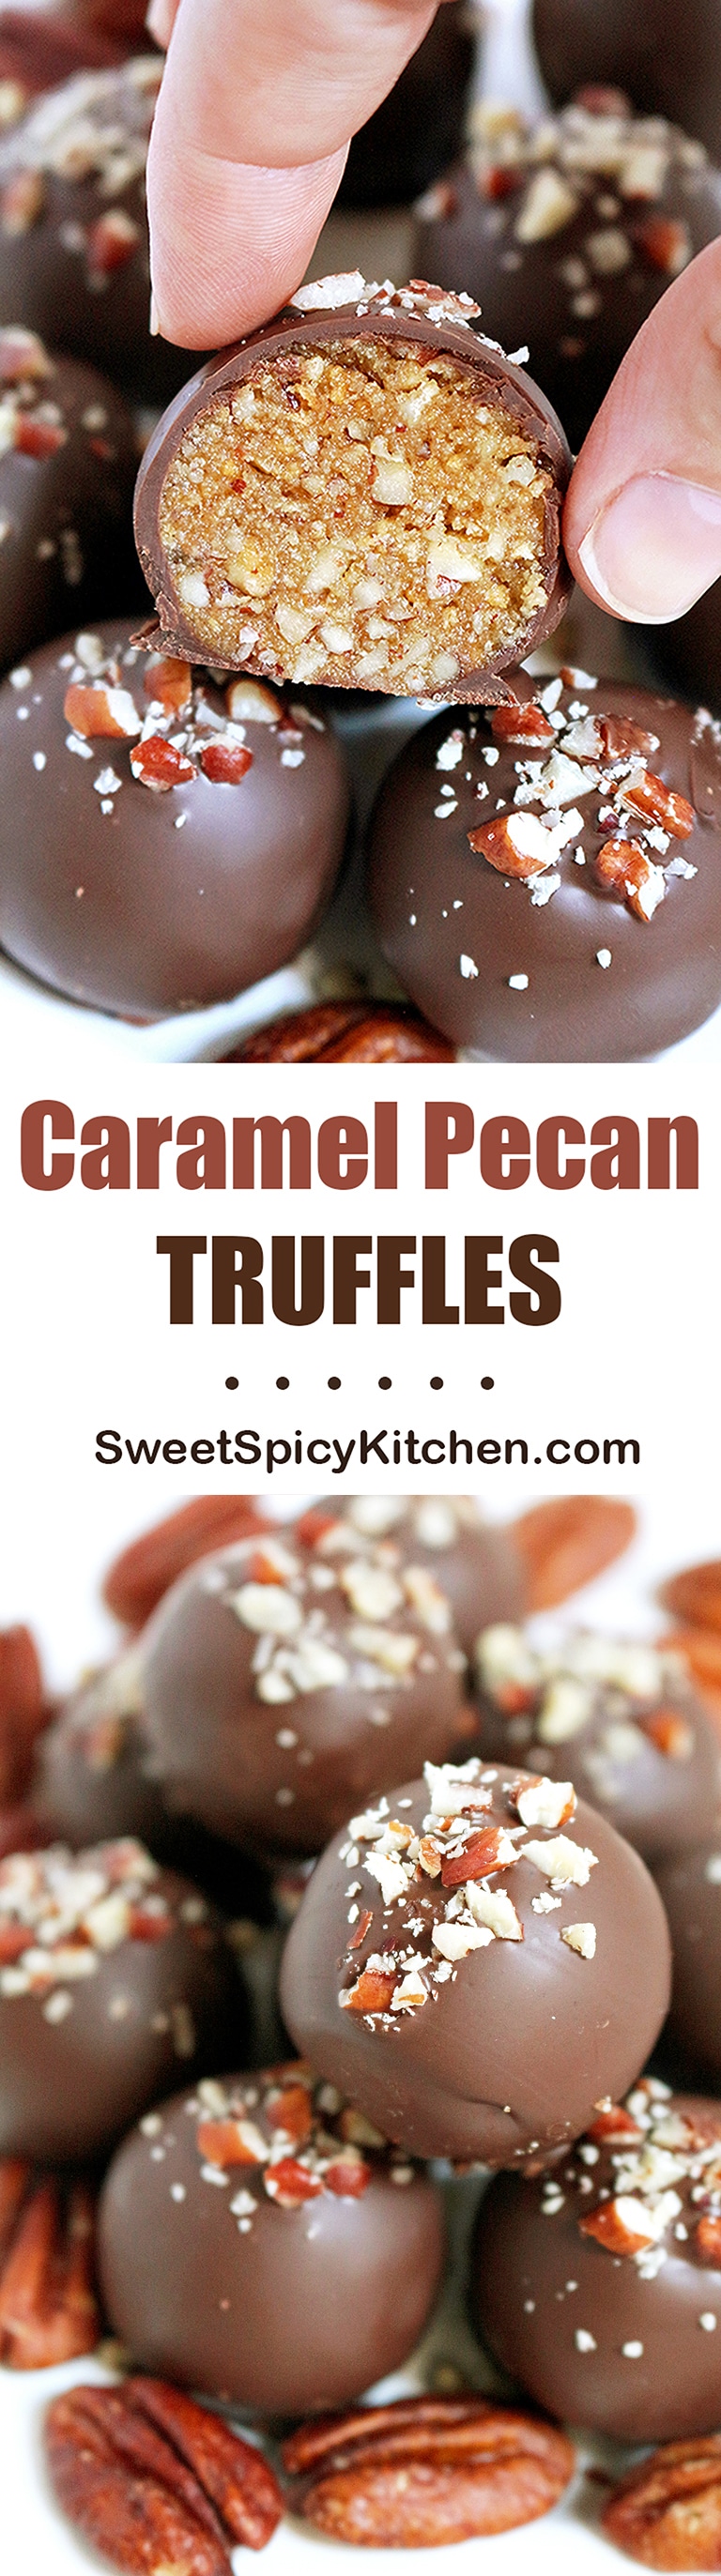 Caramel Pecan Truffles